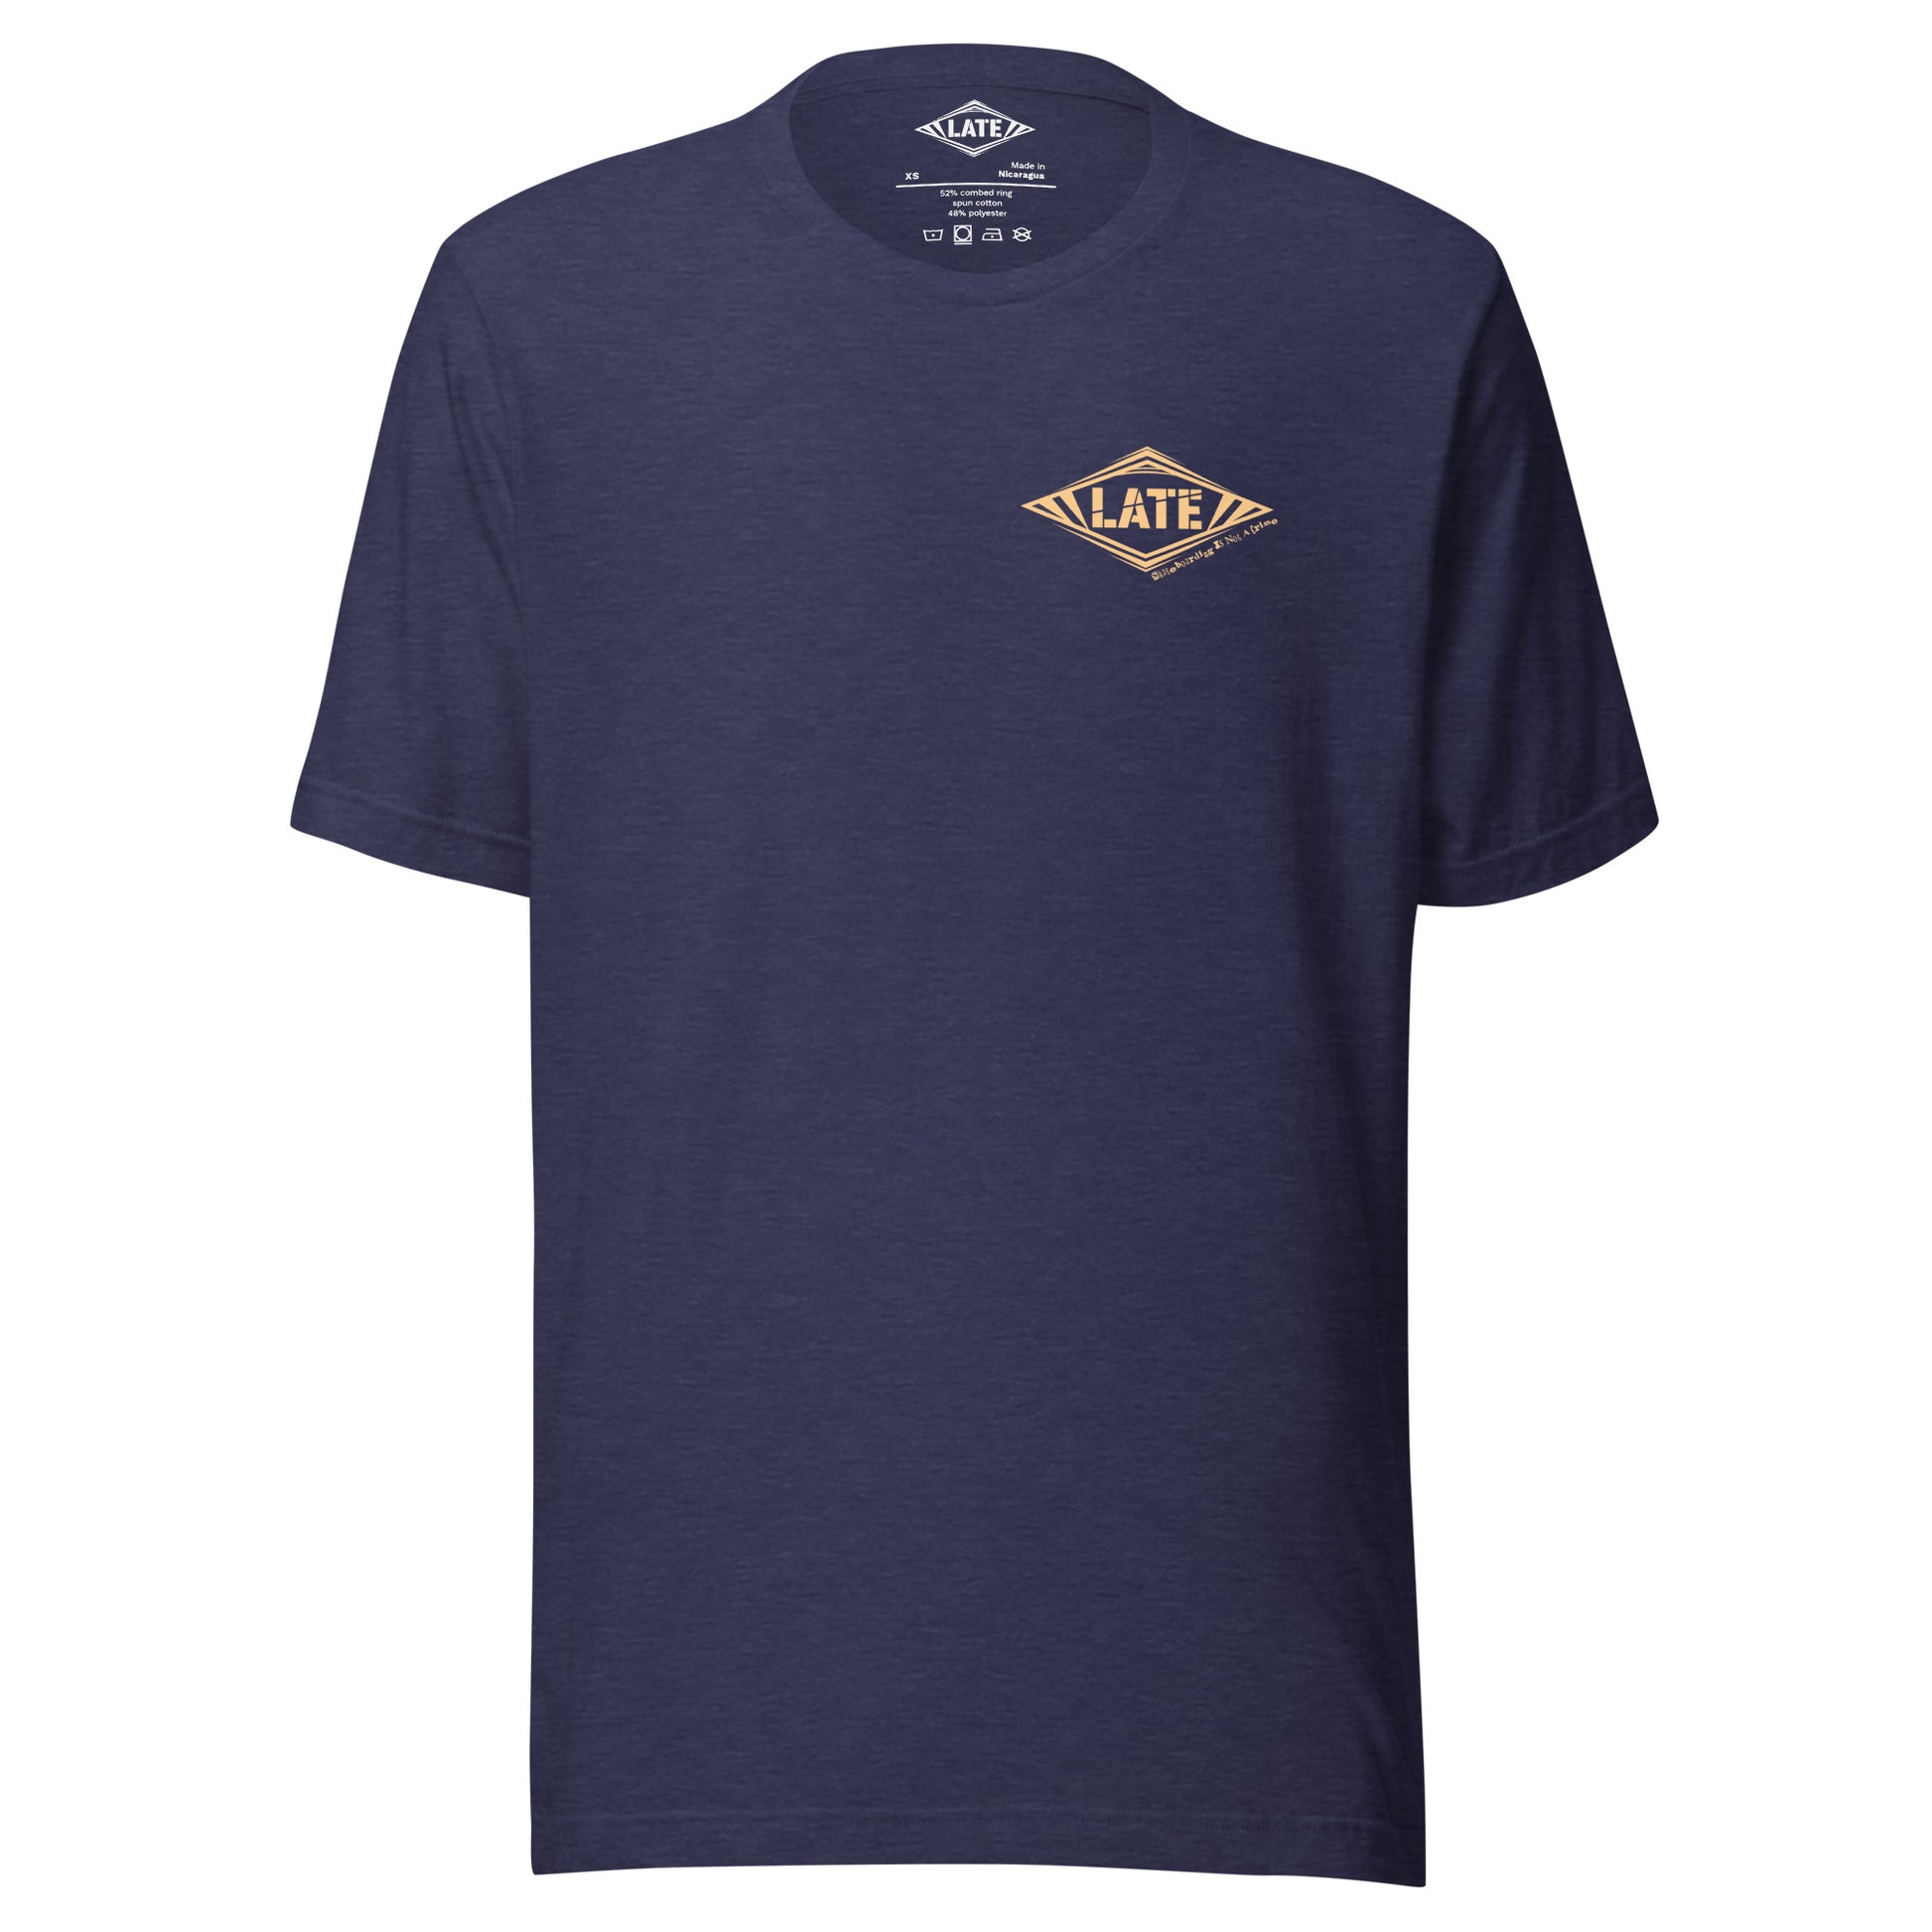 T-Shirt Skateboarding Is Not A Crime unisex Logo marque de vêtement Late Tshirt face couleur bleu nuit